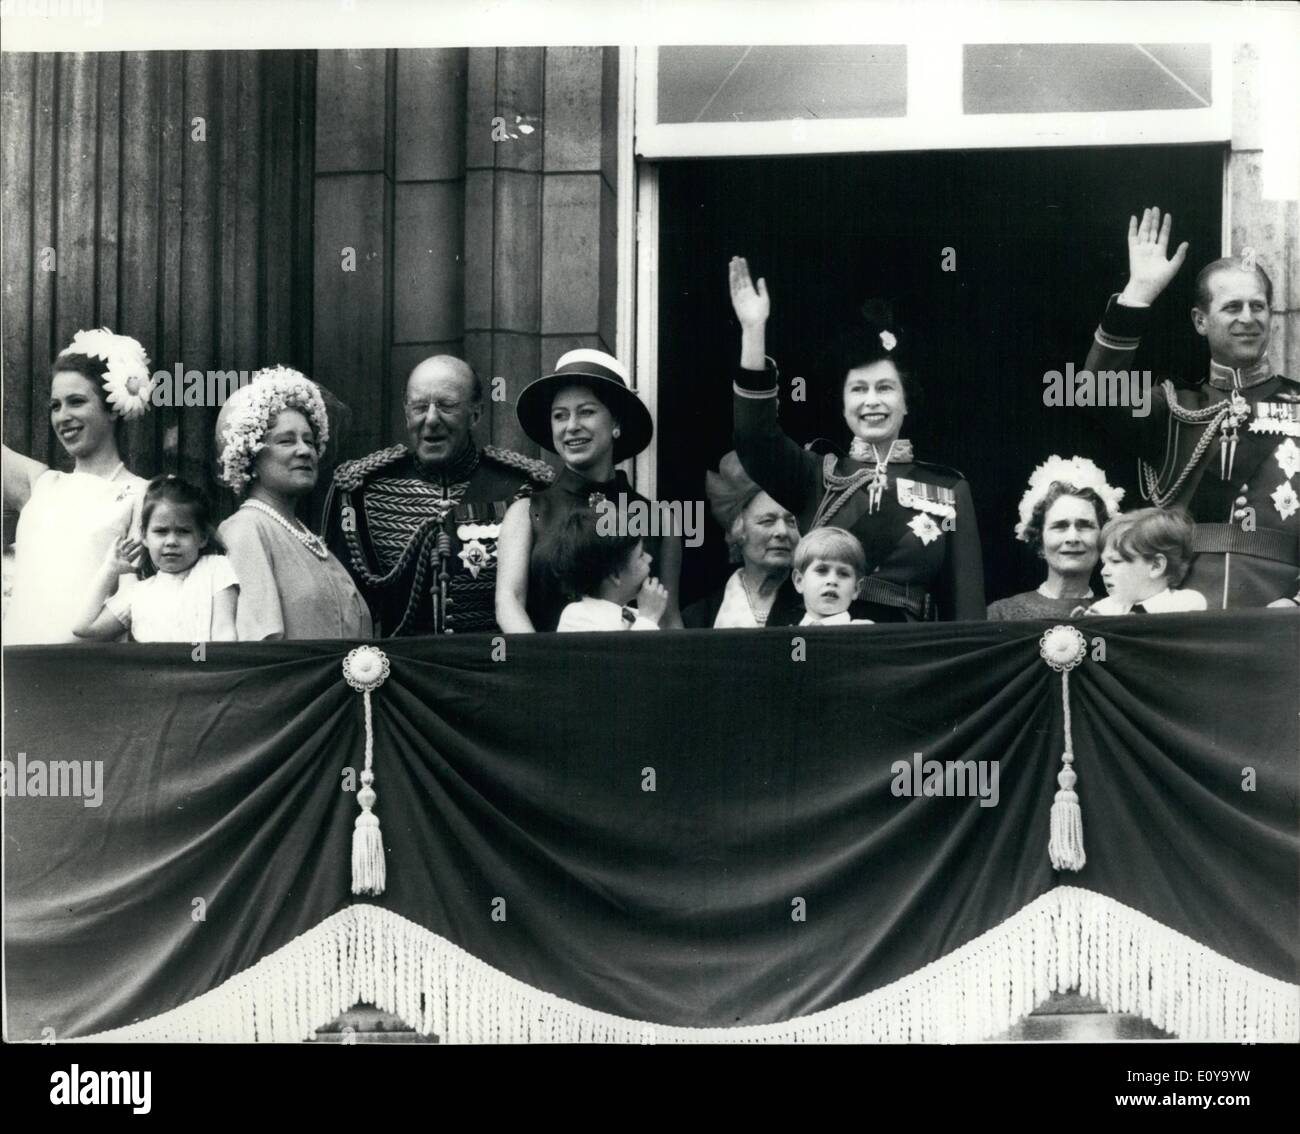 Juin 06, 1969 - La parade du cérémonie Couleur - Prototype britannique Concorde 002 salue la Reine : la cérémonie de la parade la couleur a eu lieu aujourd'hui à Horse Guards Parade pour célébrer l'anniversaire officiel de la Reine, qui a pris le salut pendant le défilé de la garde. Une autre attraction pour la cérémonie était le vol au dessus de Londres du Concorde 002 qui passa sur le palais de Buckingham comme un hommage à la Reine qui l'a observé depuis le balcon Banque D'Images